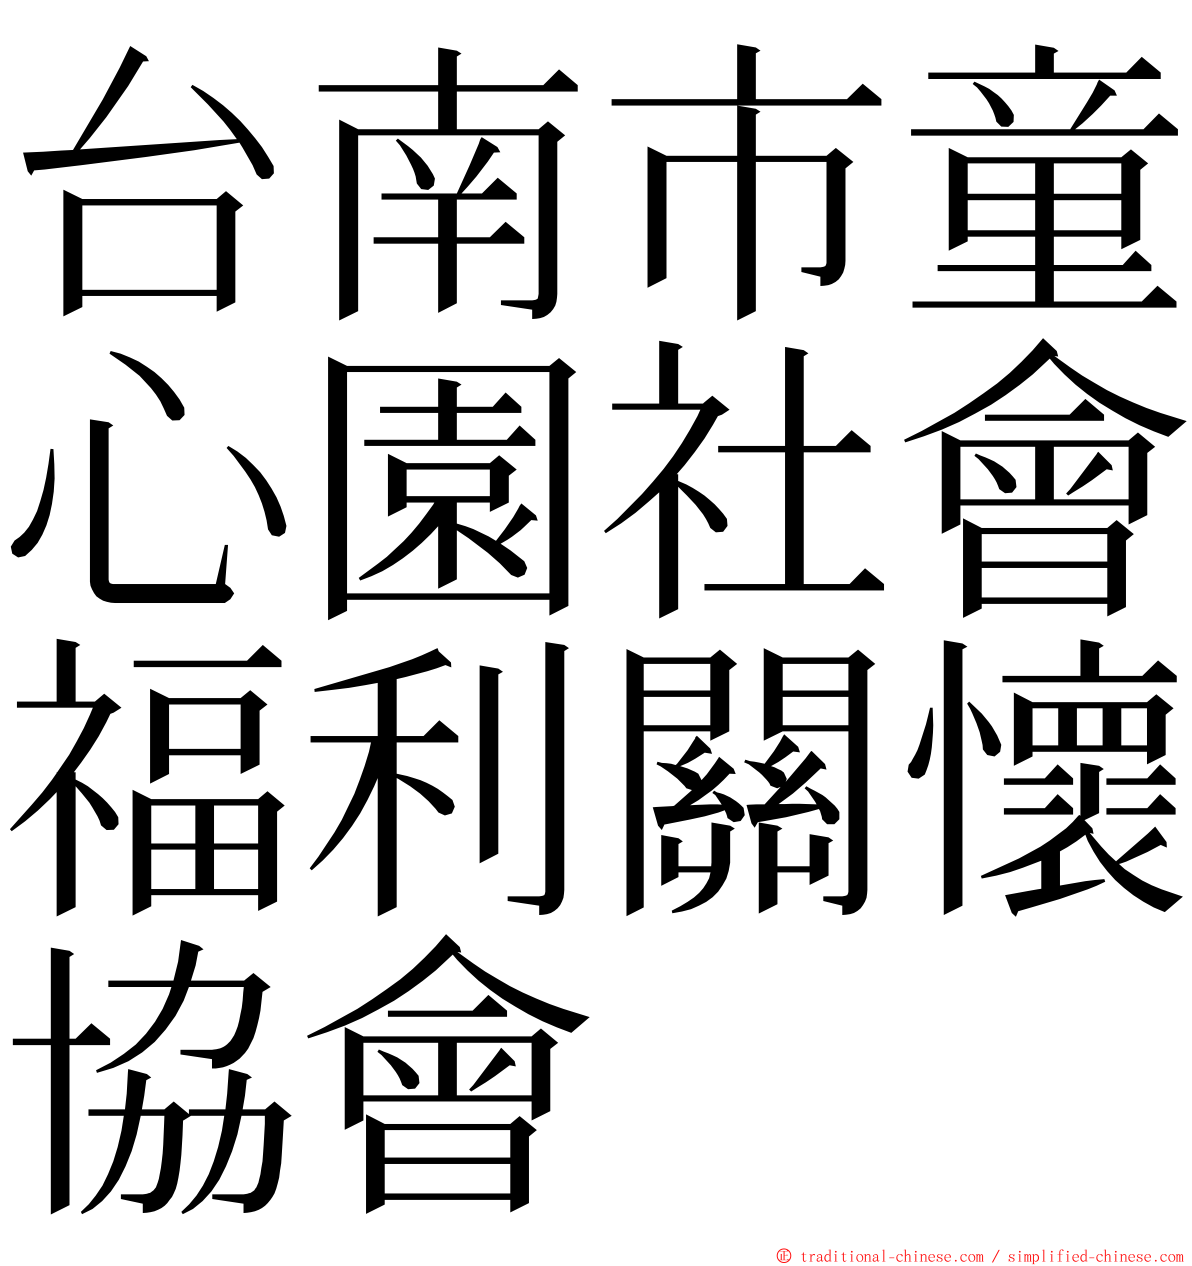 台南市童心園社會福利關懷協會 ming font